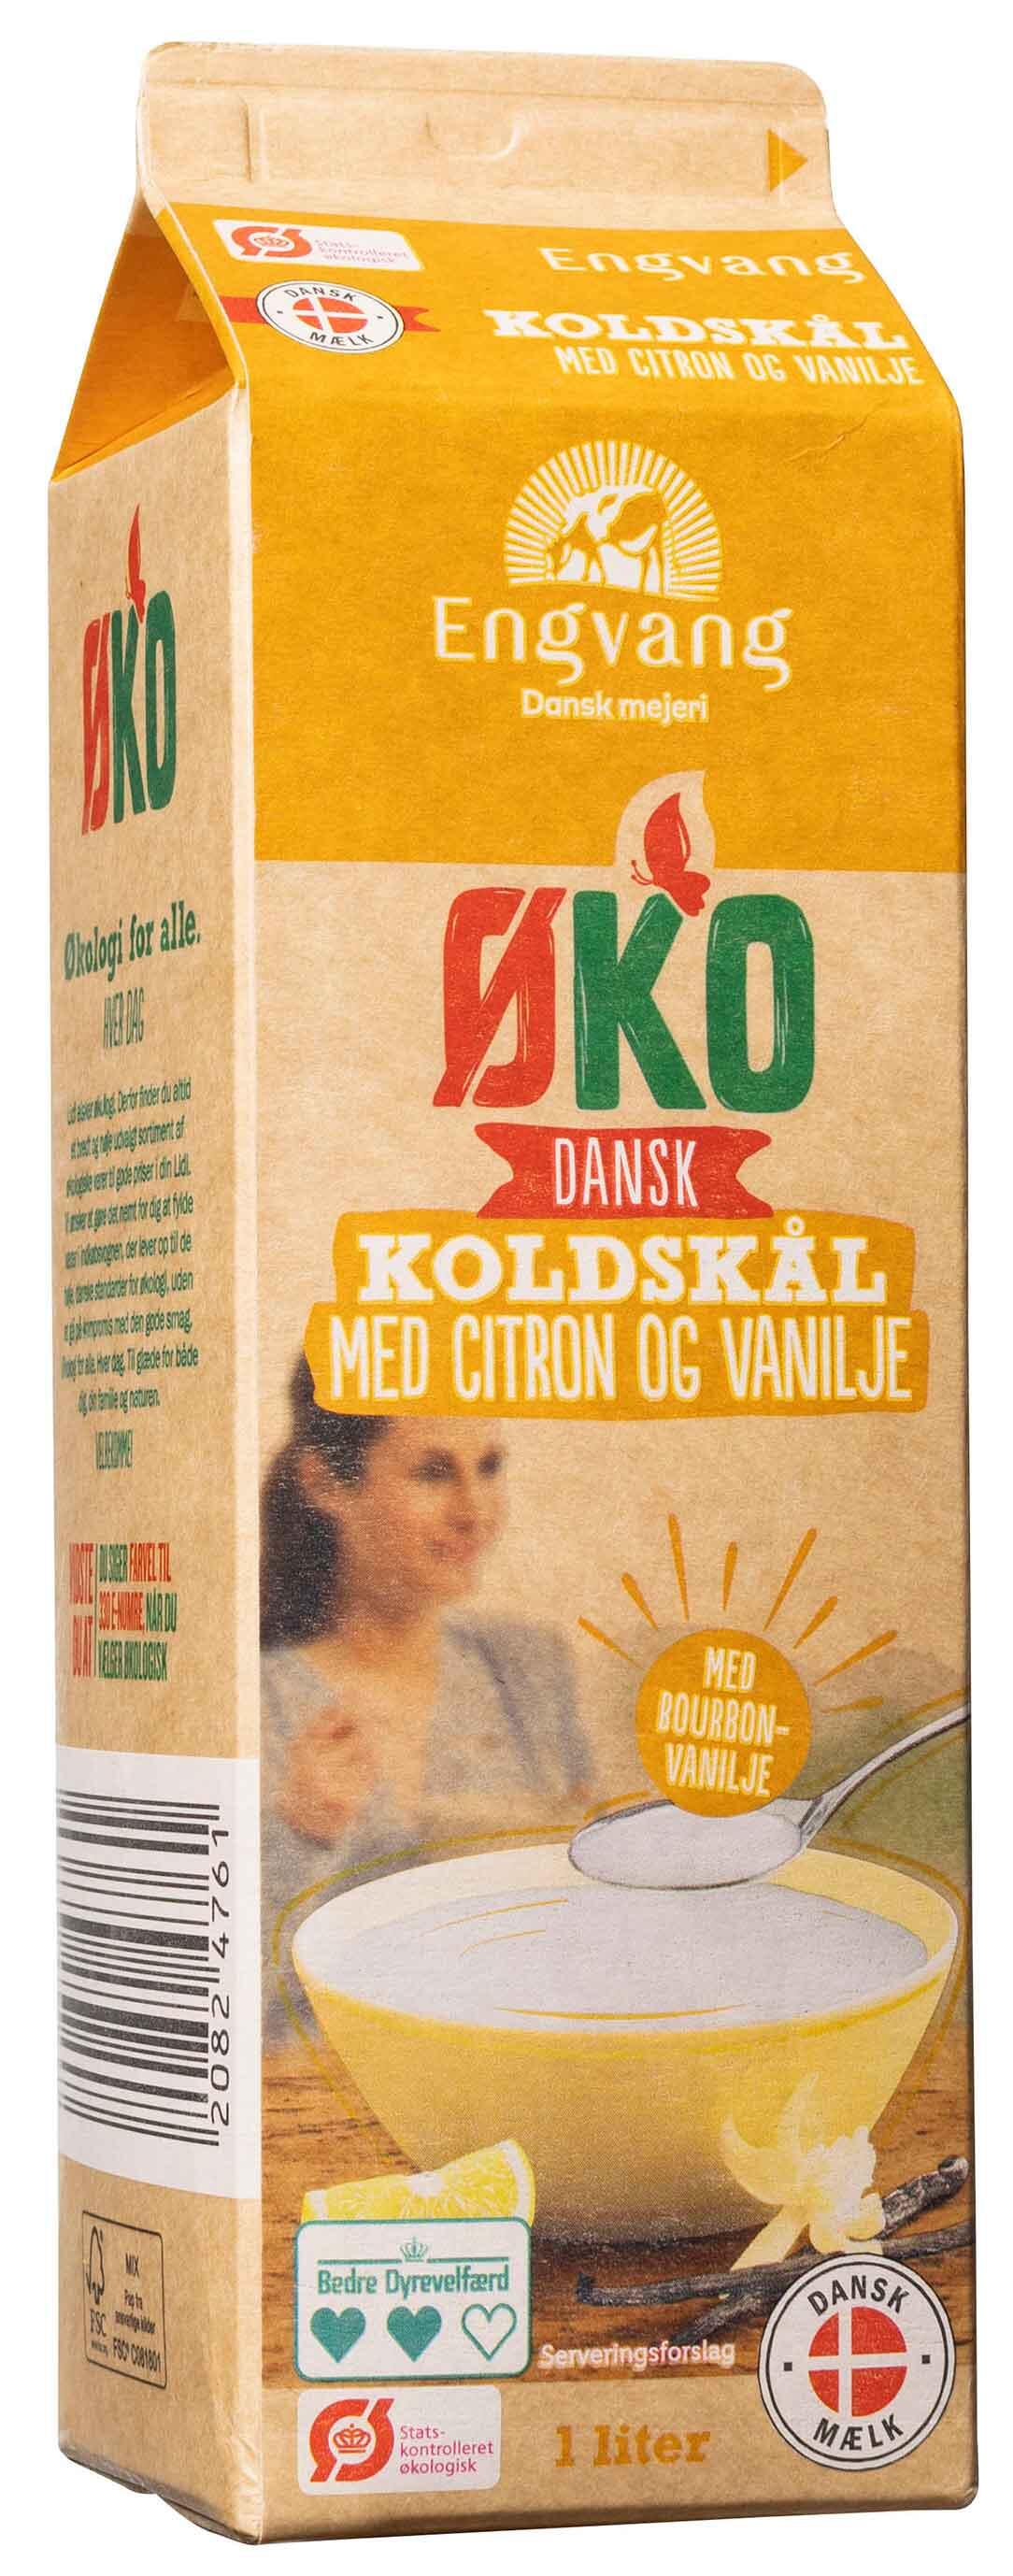 Øko dansk koldskål med citron og vanilje Engvang